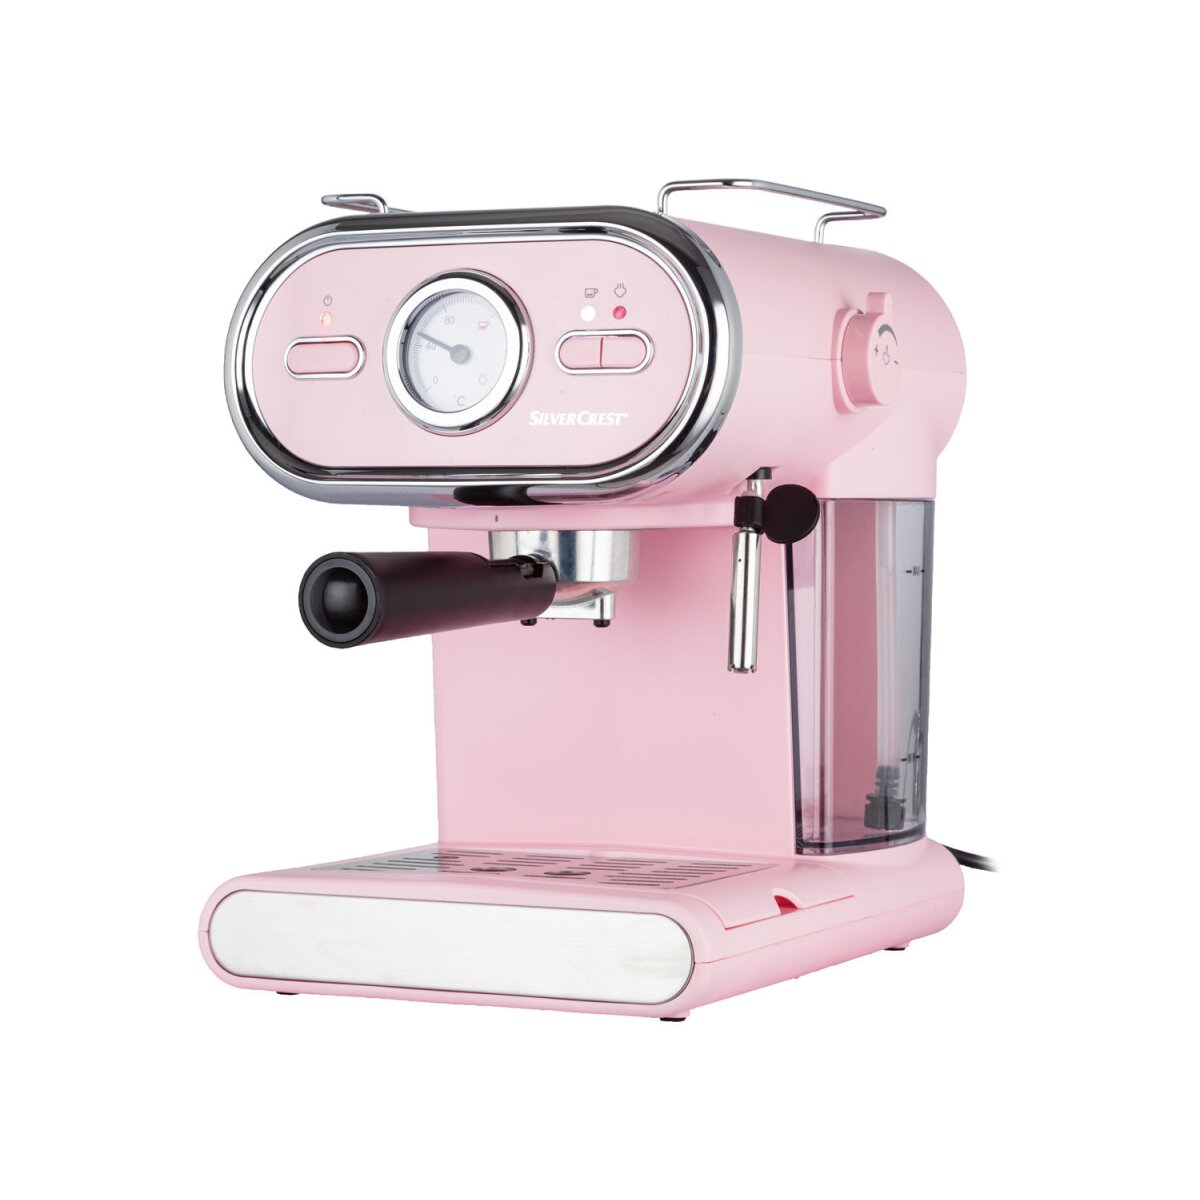 - TOOLS 50,99 SEM B-Ware D3 SILVERCREST® 1100 rosa € KITCHEN sehr gut, Espressomaschine/Siebträger Pastell